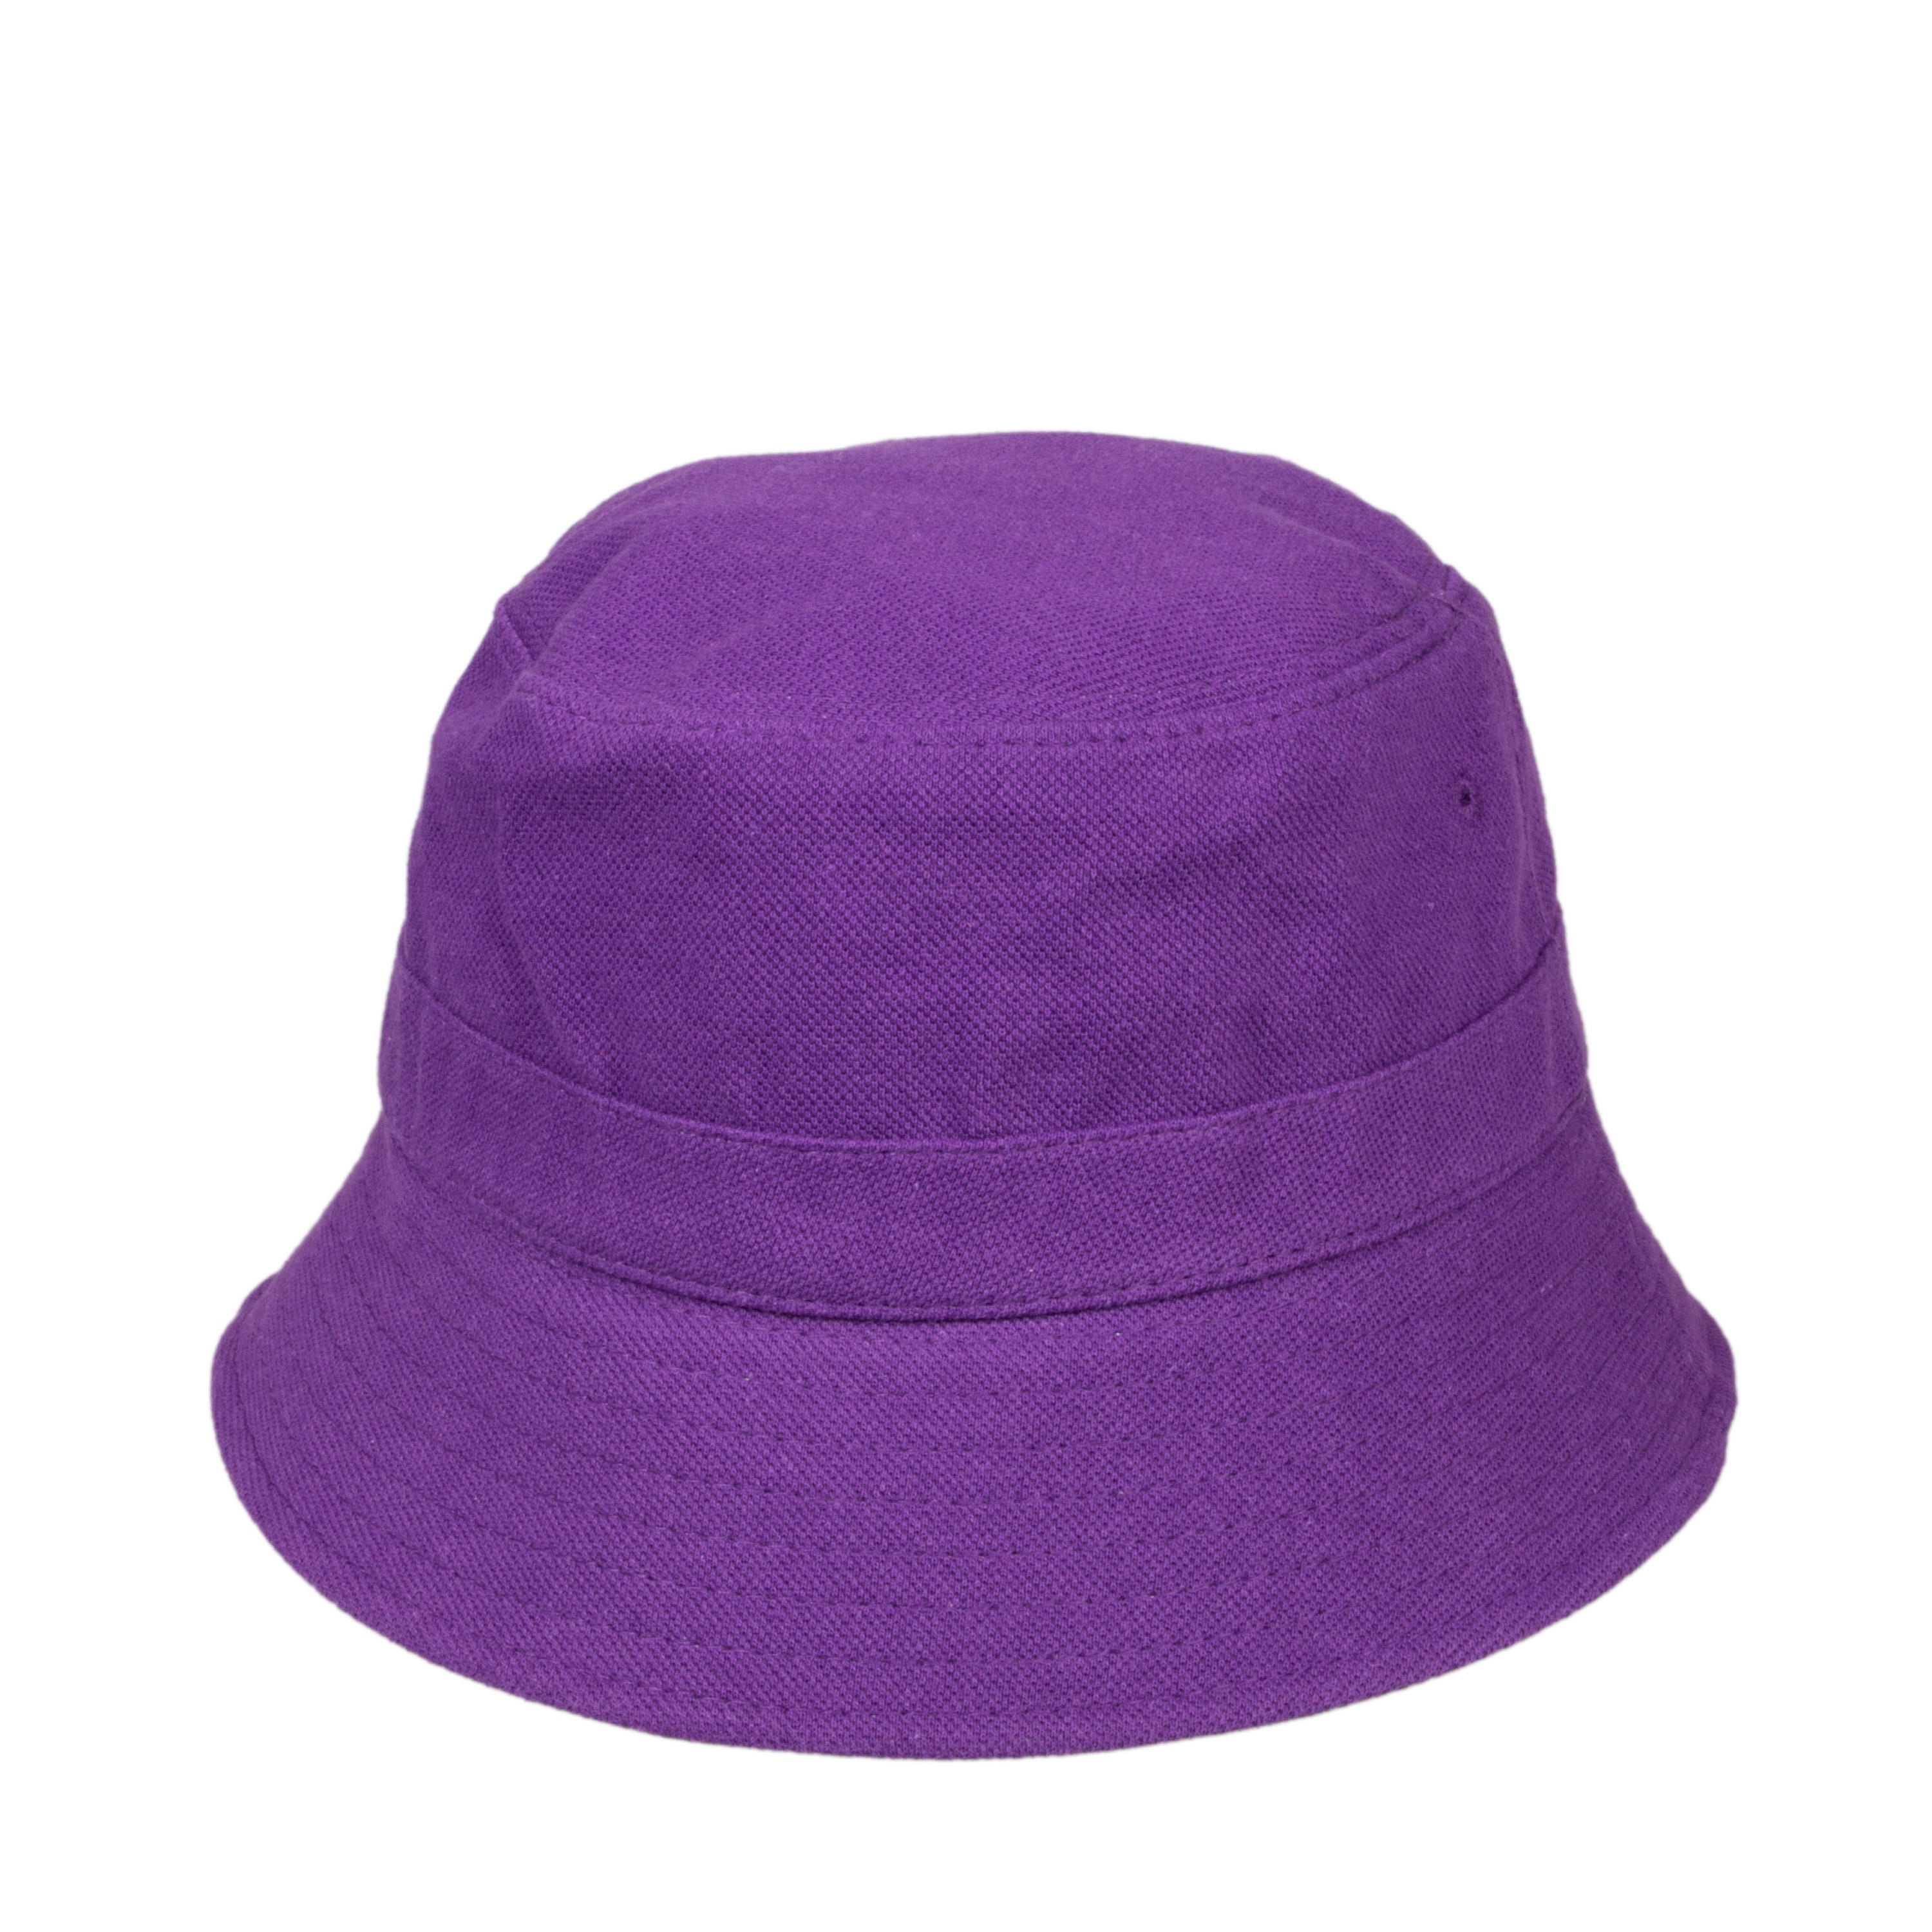 Purple Cotton Bucket Hat, Women Bucket Hat, One Size Hat, Women Summer Hat, Fisherman Summer Hat, HATSQUARE Women Hat, Travel Sun Hat